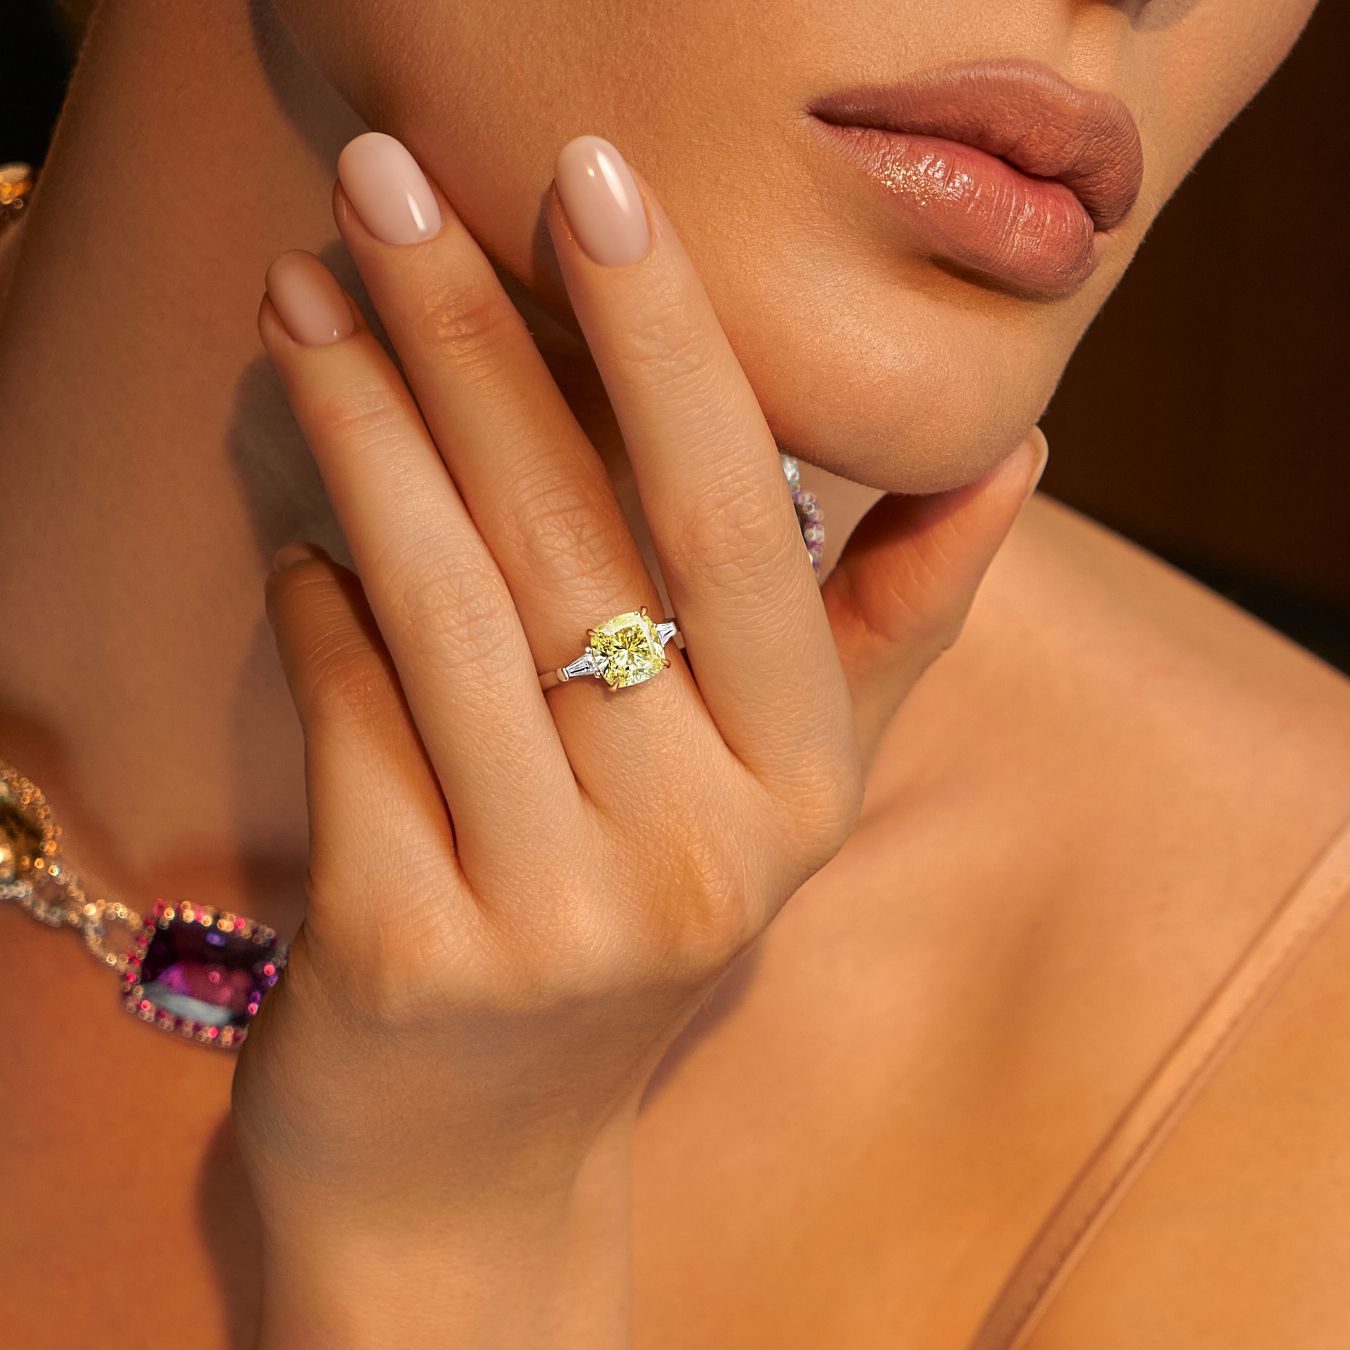 продажа Золотое кольцо Fancy с бриллиантами 3.22 Ct в салоне «Emporium Gold»